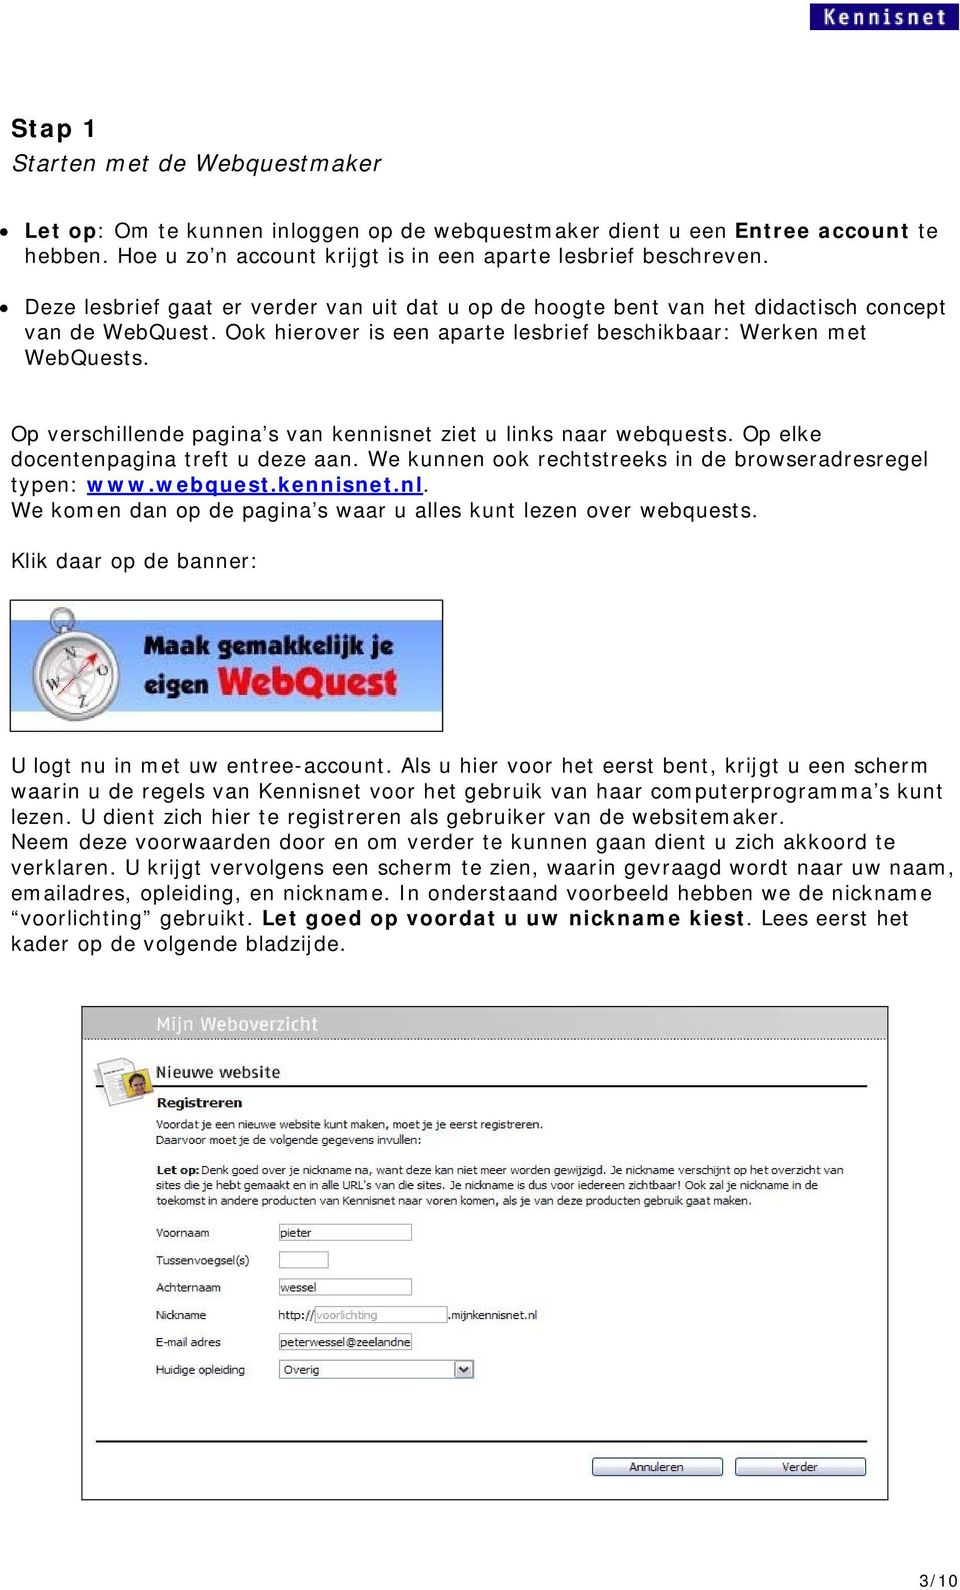 Op verschillende pagina s van kennisnet ziet u links naar webquests. Op elke docentenpagina treft u deze aan. We kunnen ook rechtstreeks in de browseradresregel typen: www.webquest.kennisnet.nl.